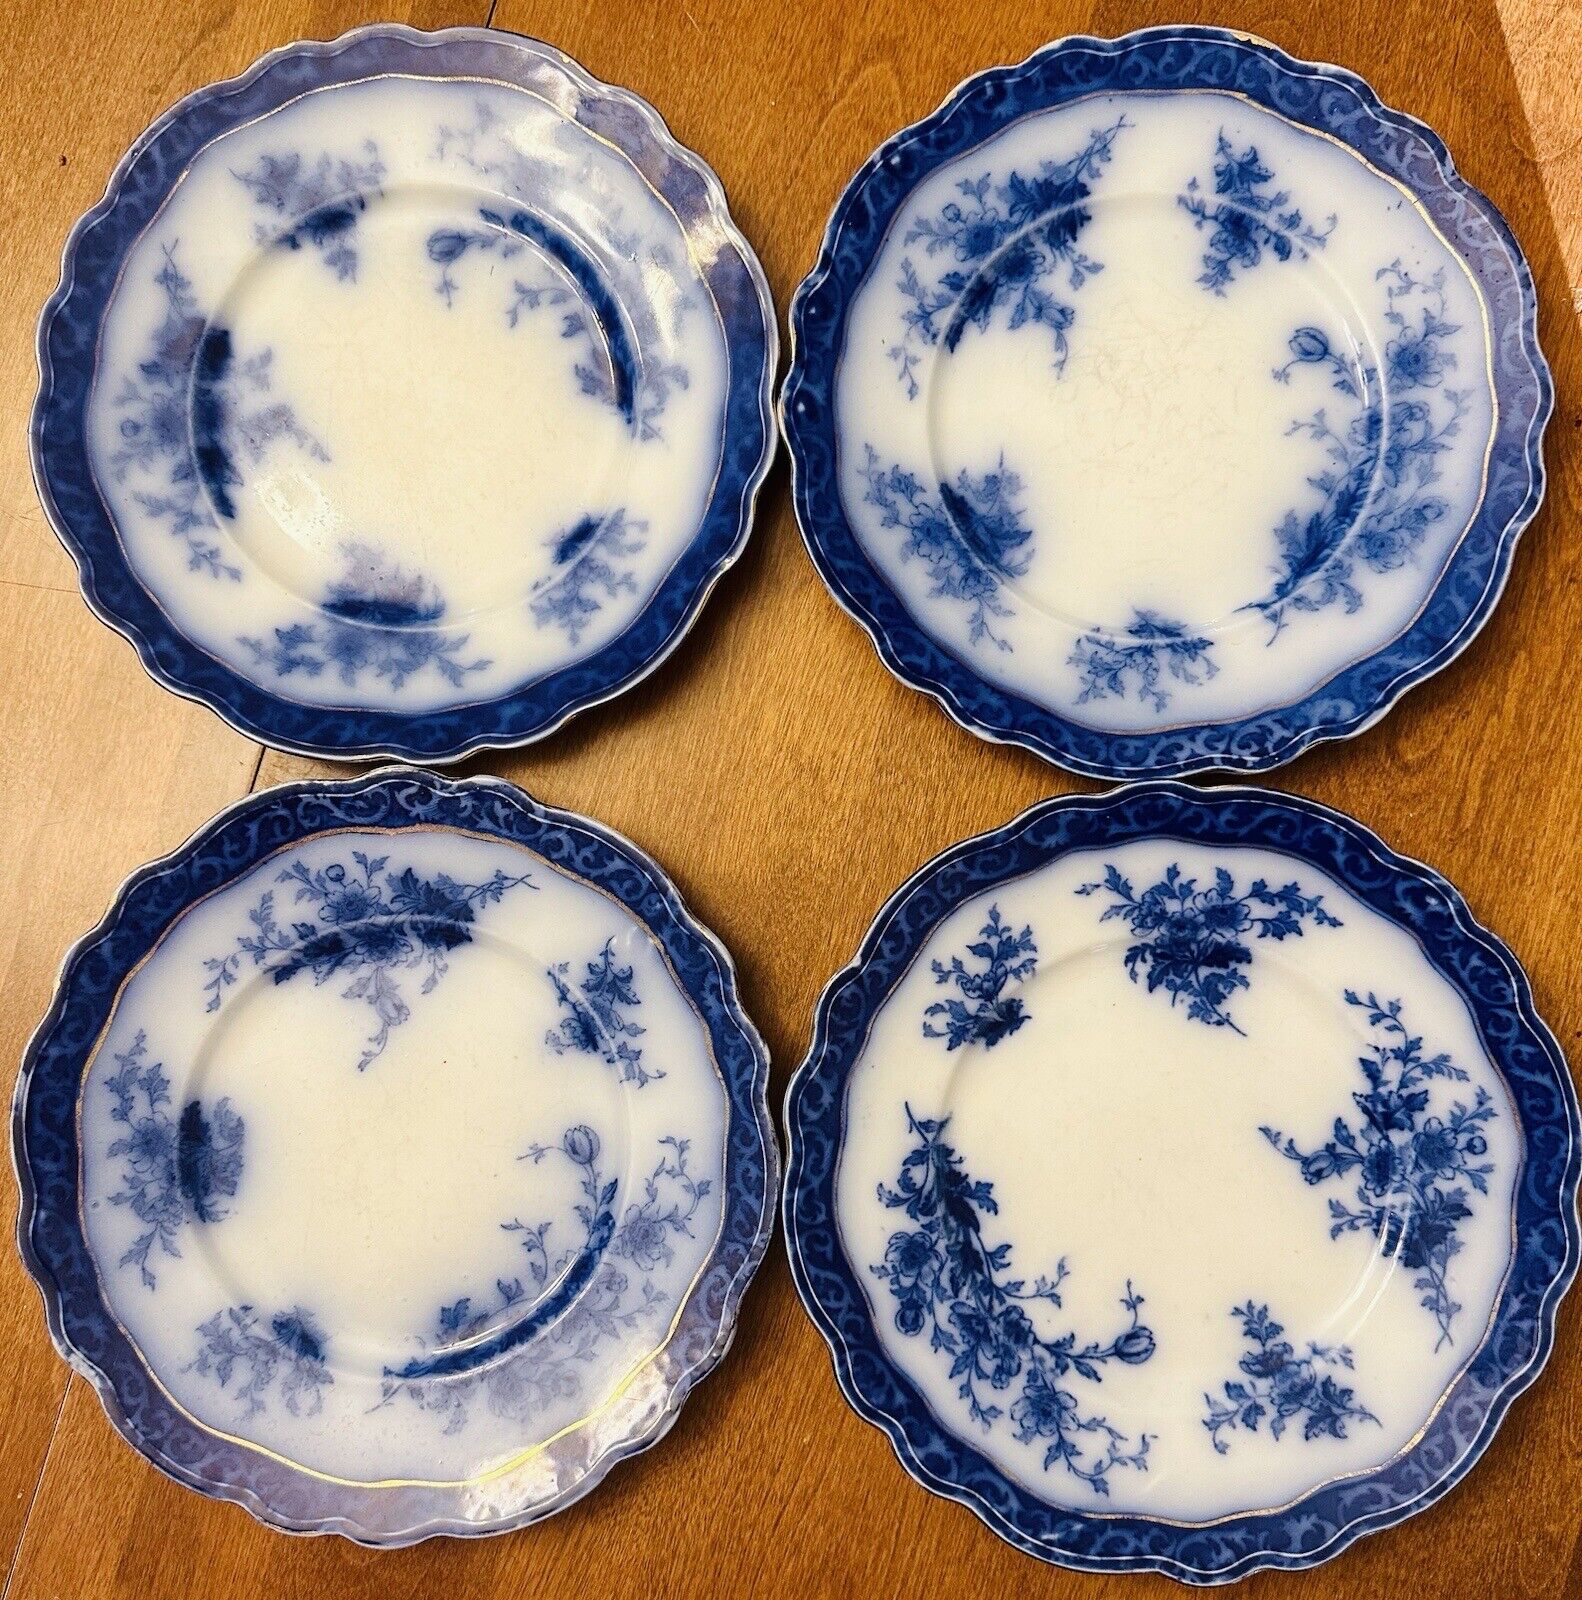 ANTIQUE FLOW BLUE “Touraine” SET of 4 Plates 9” Henry Alcock ENGLAND 1900 EUC